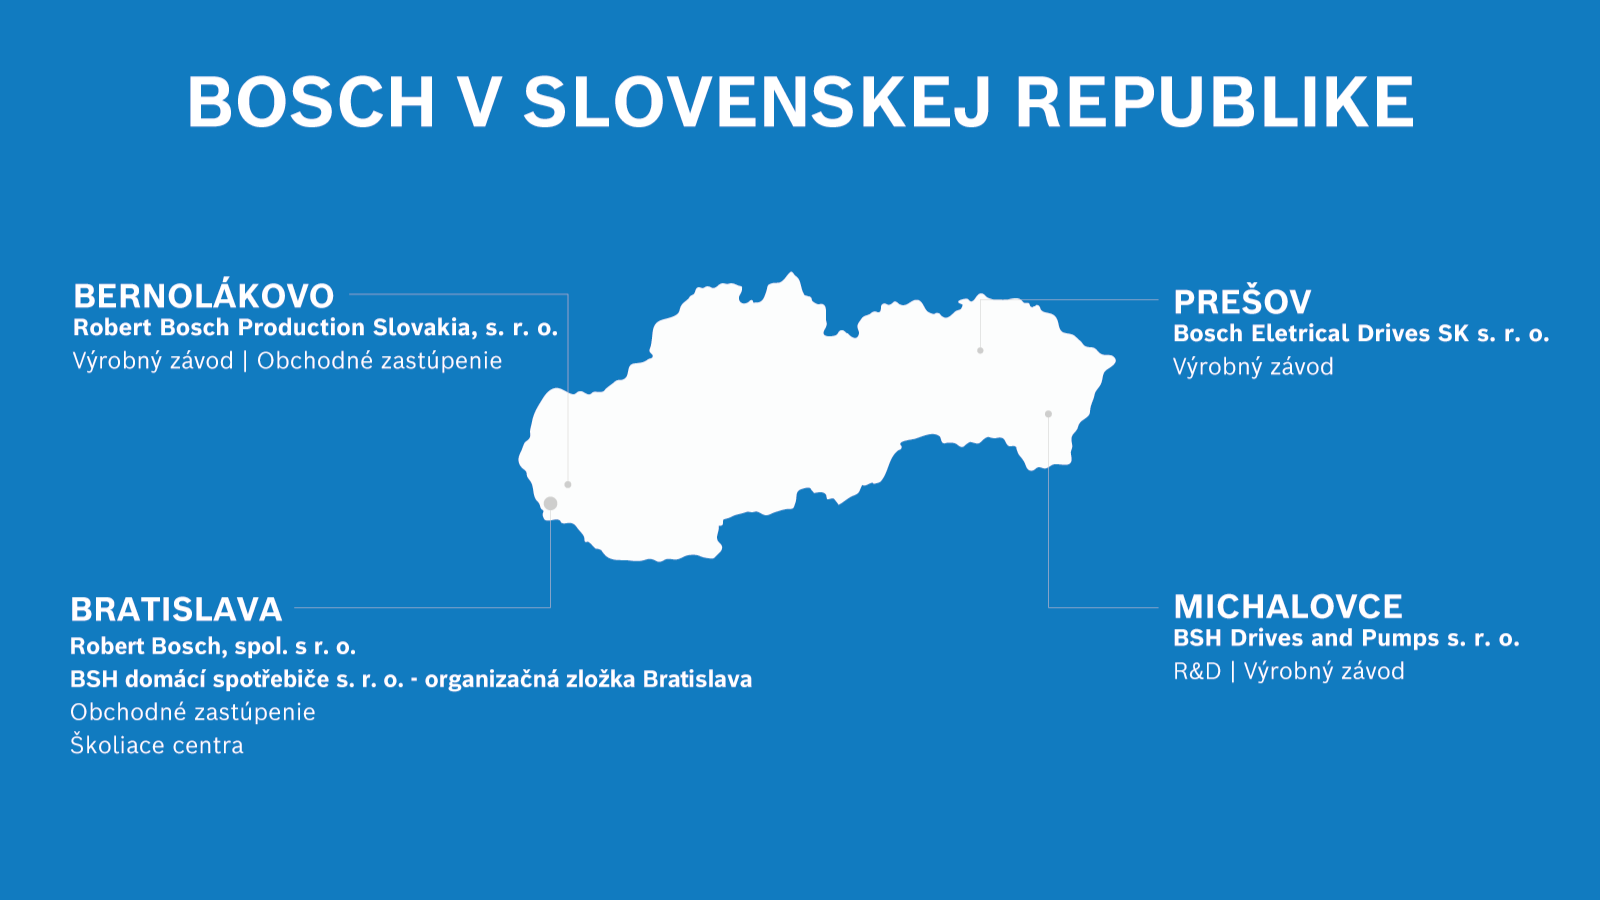 Prehľad legálnych entít na Slovensku